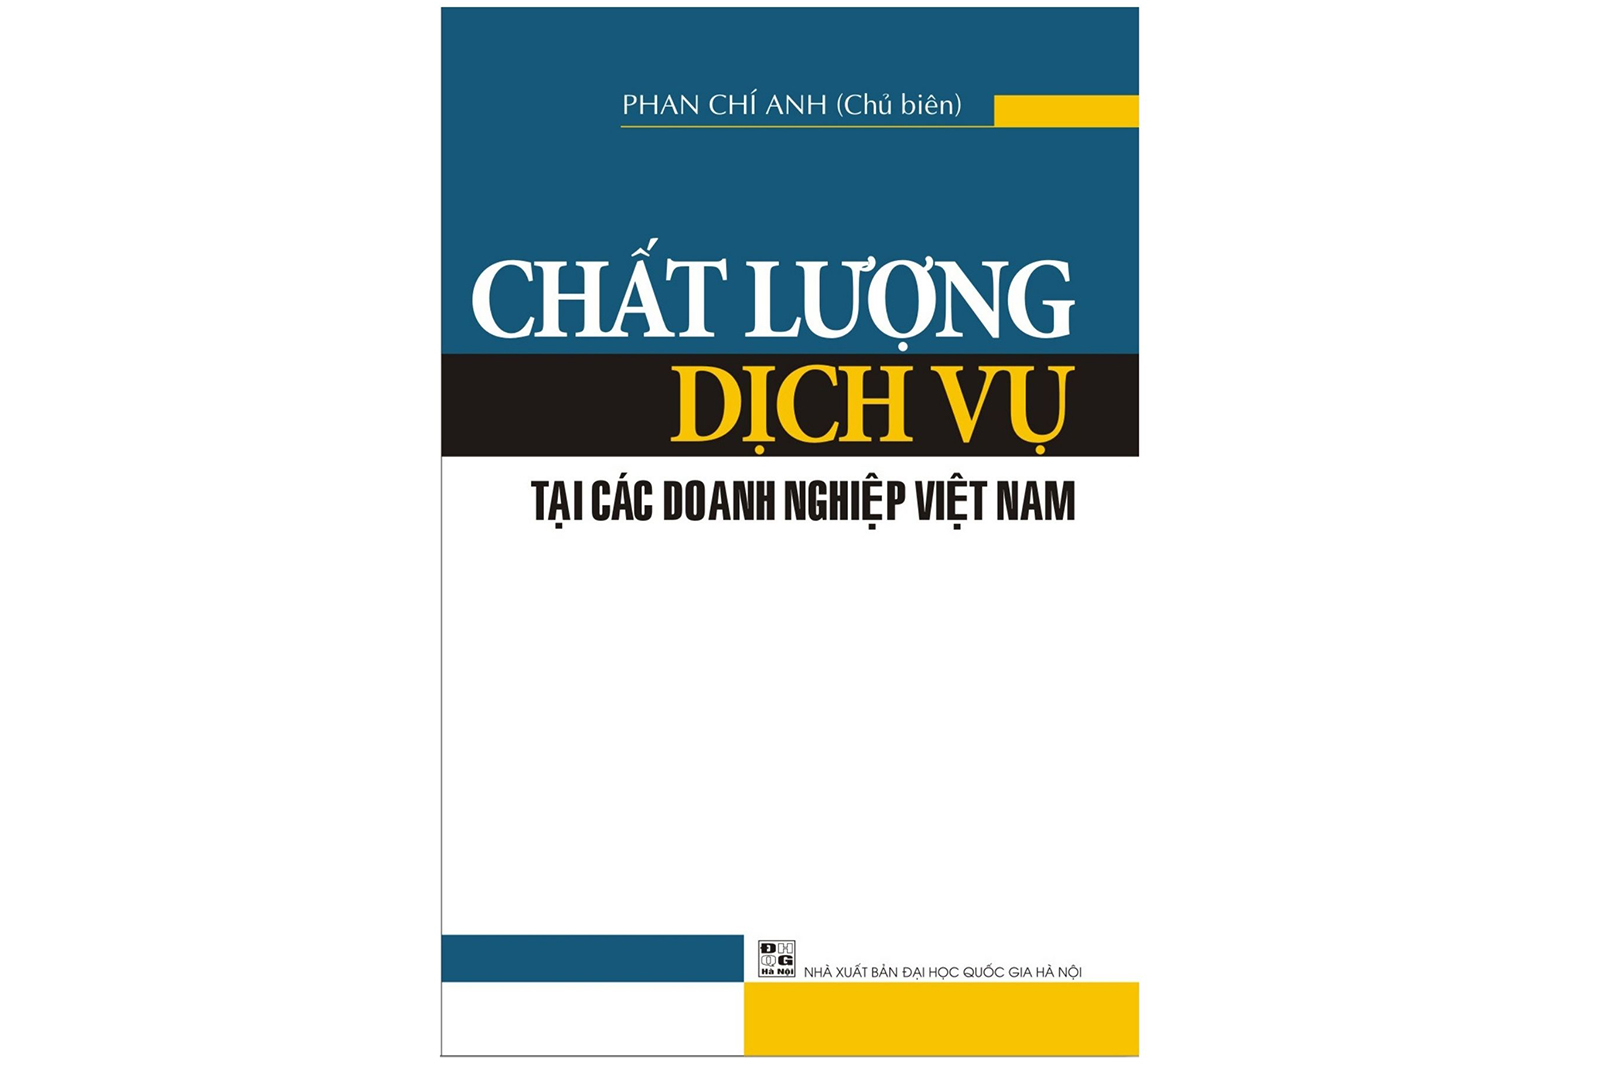 Chất lượng dịch vụ tại các doanh nghiệp Việt Nam